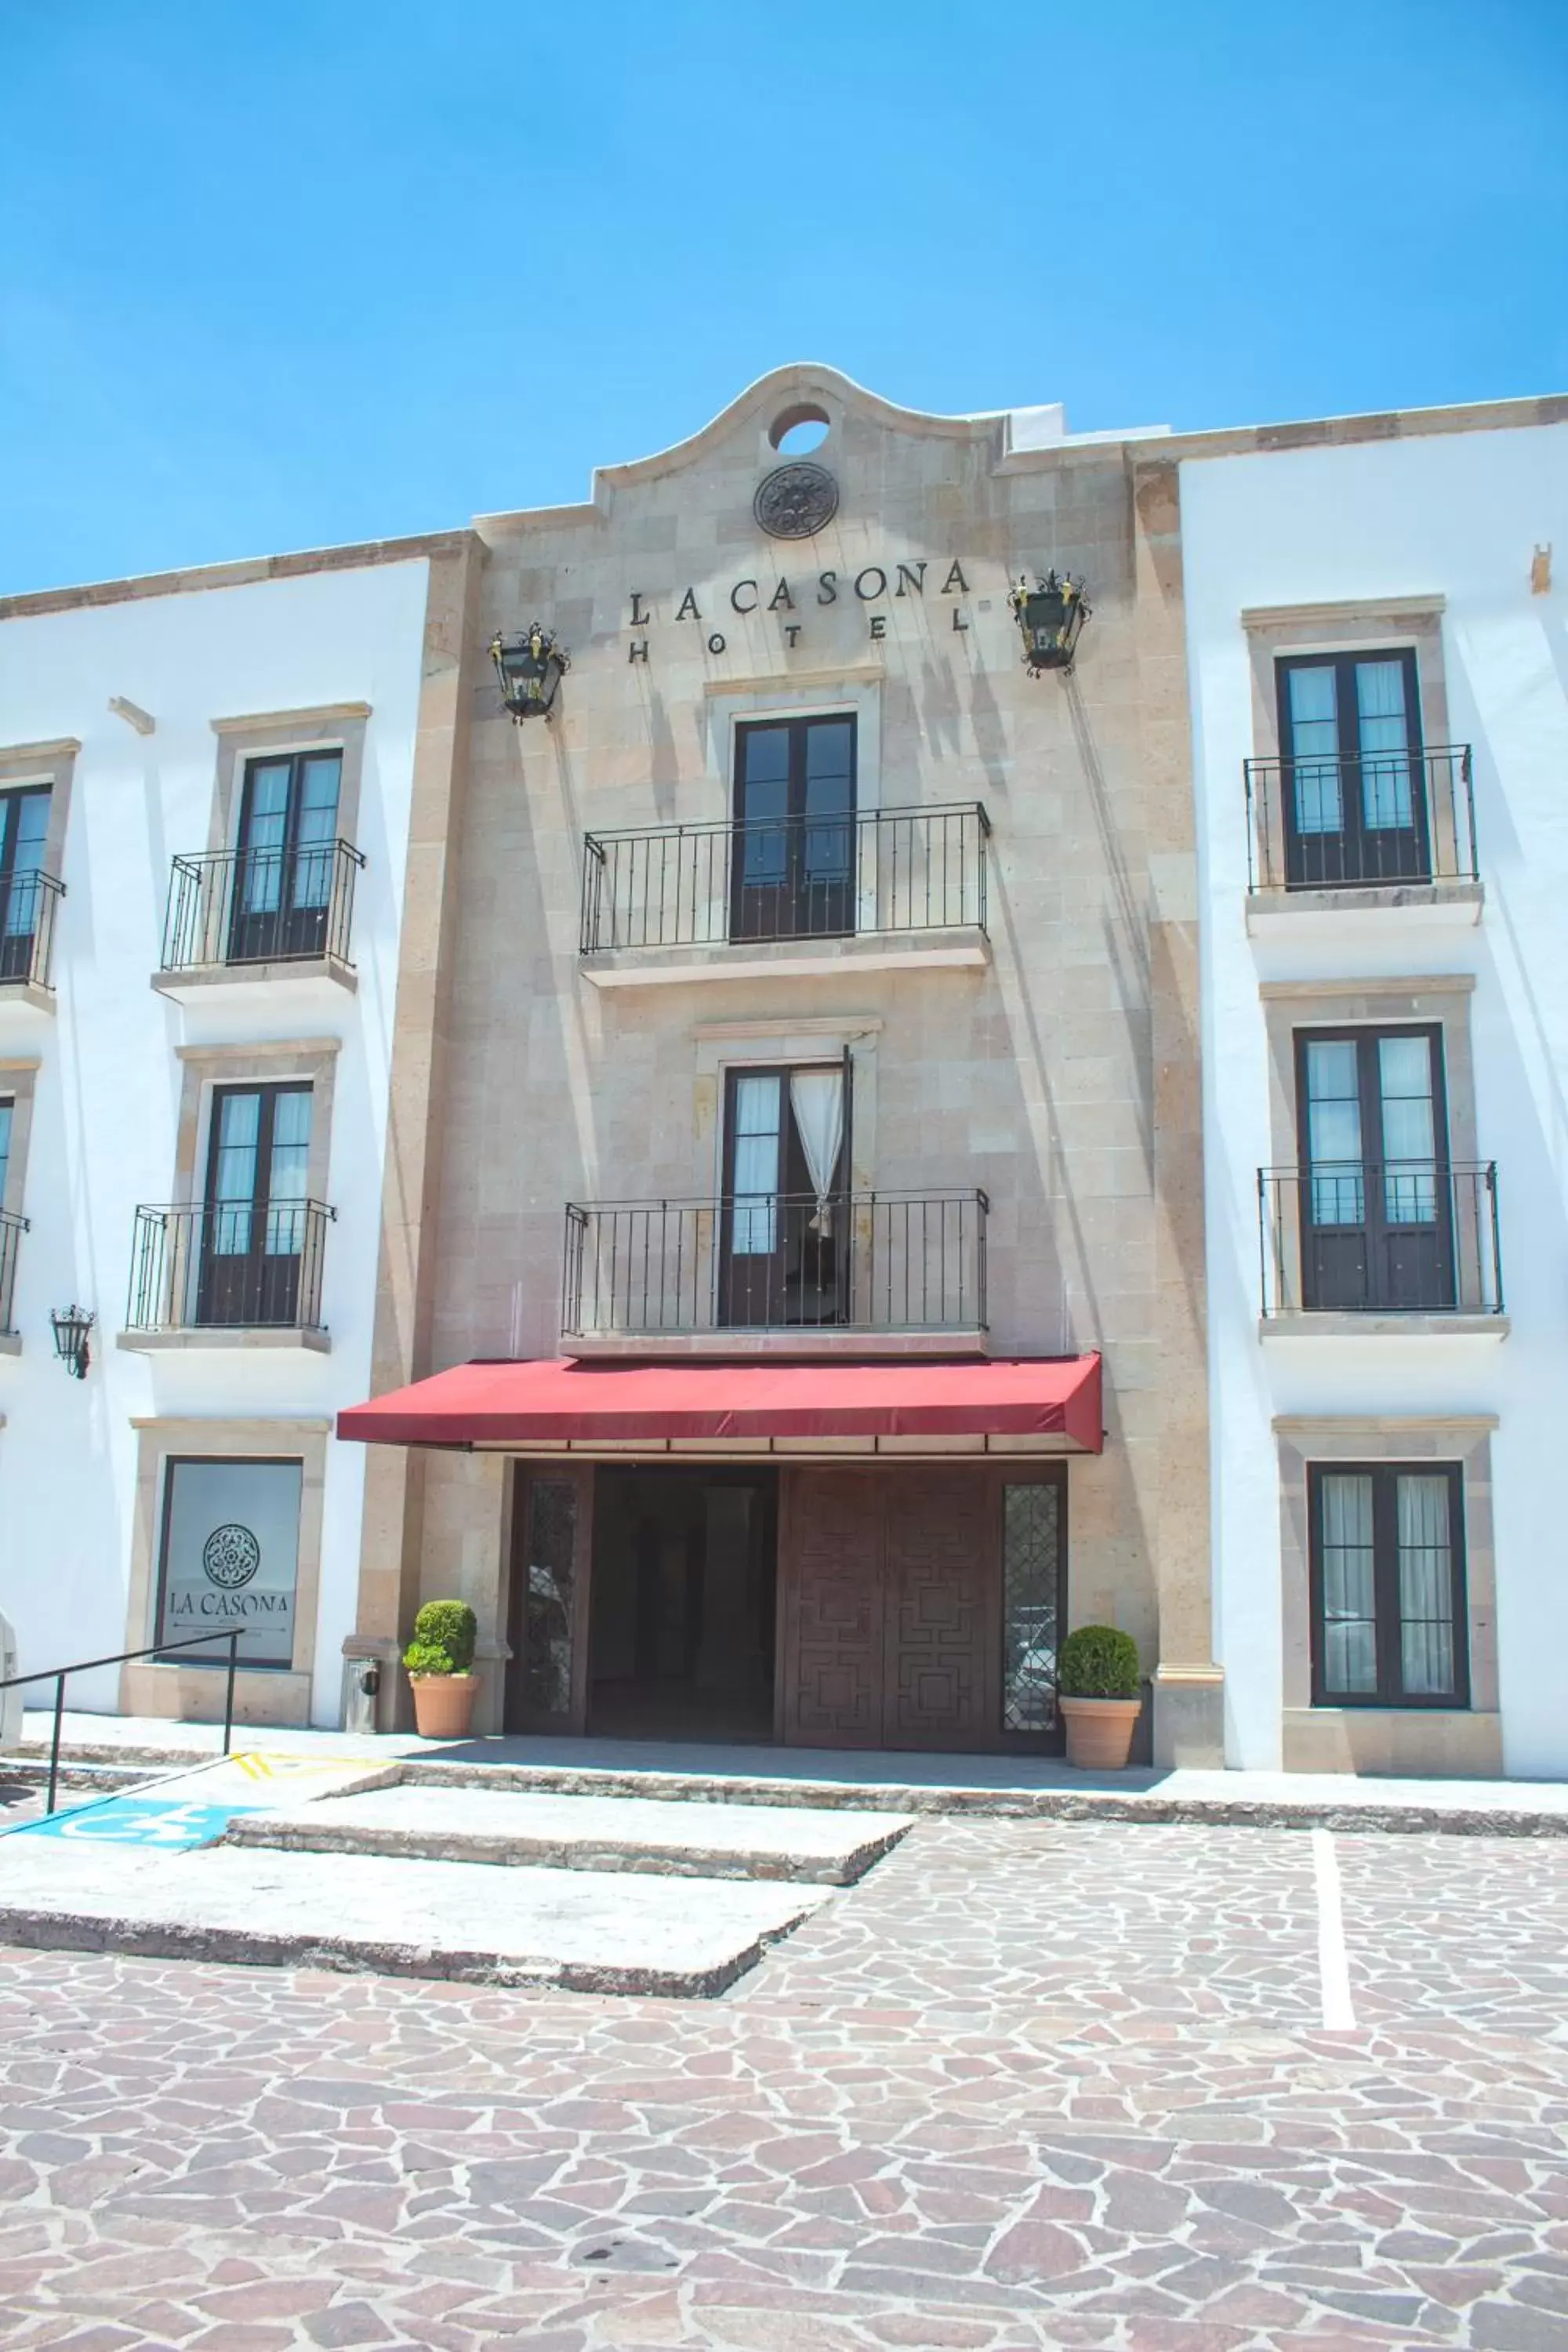 Facade/entrance, Property Building in Hotel La Casona 30